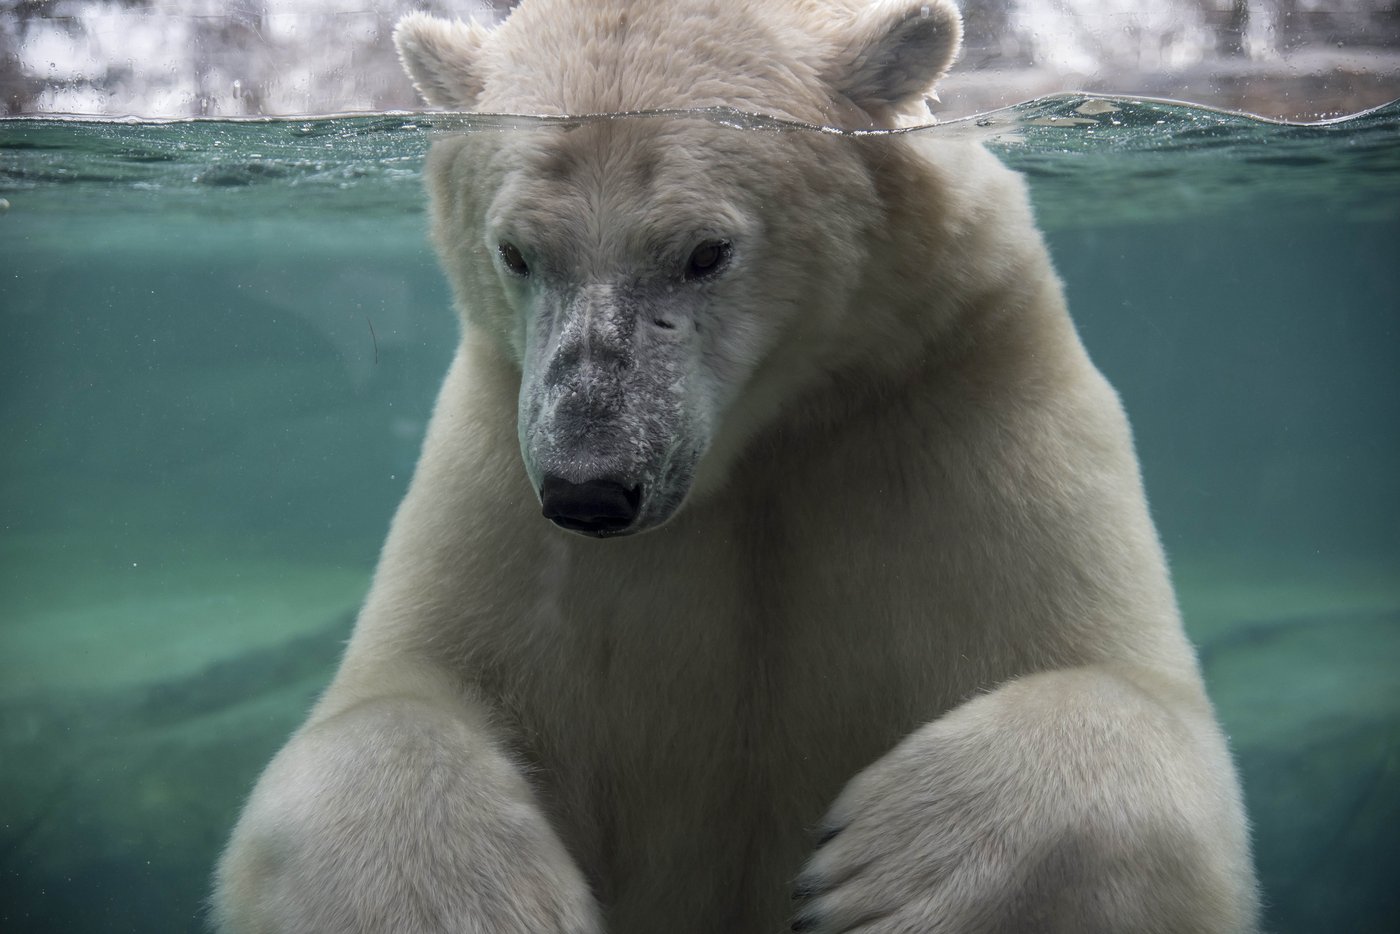 L’ours polaire du zoo de Calgary s’est noyé, révèle la nécropsie